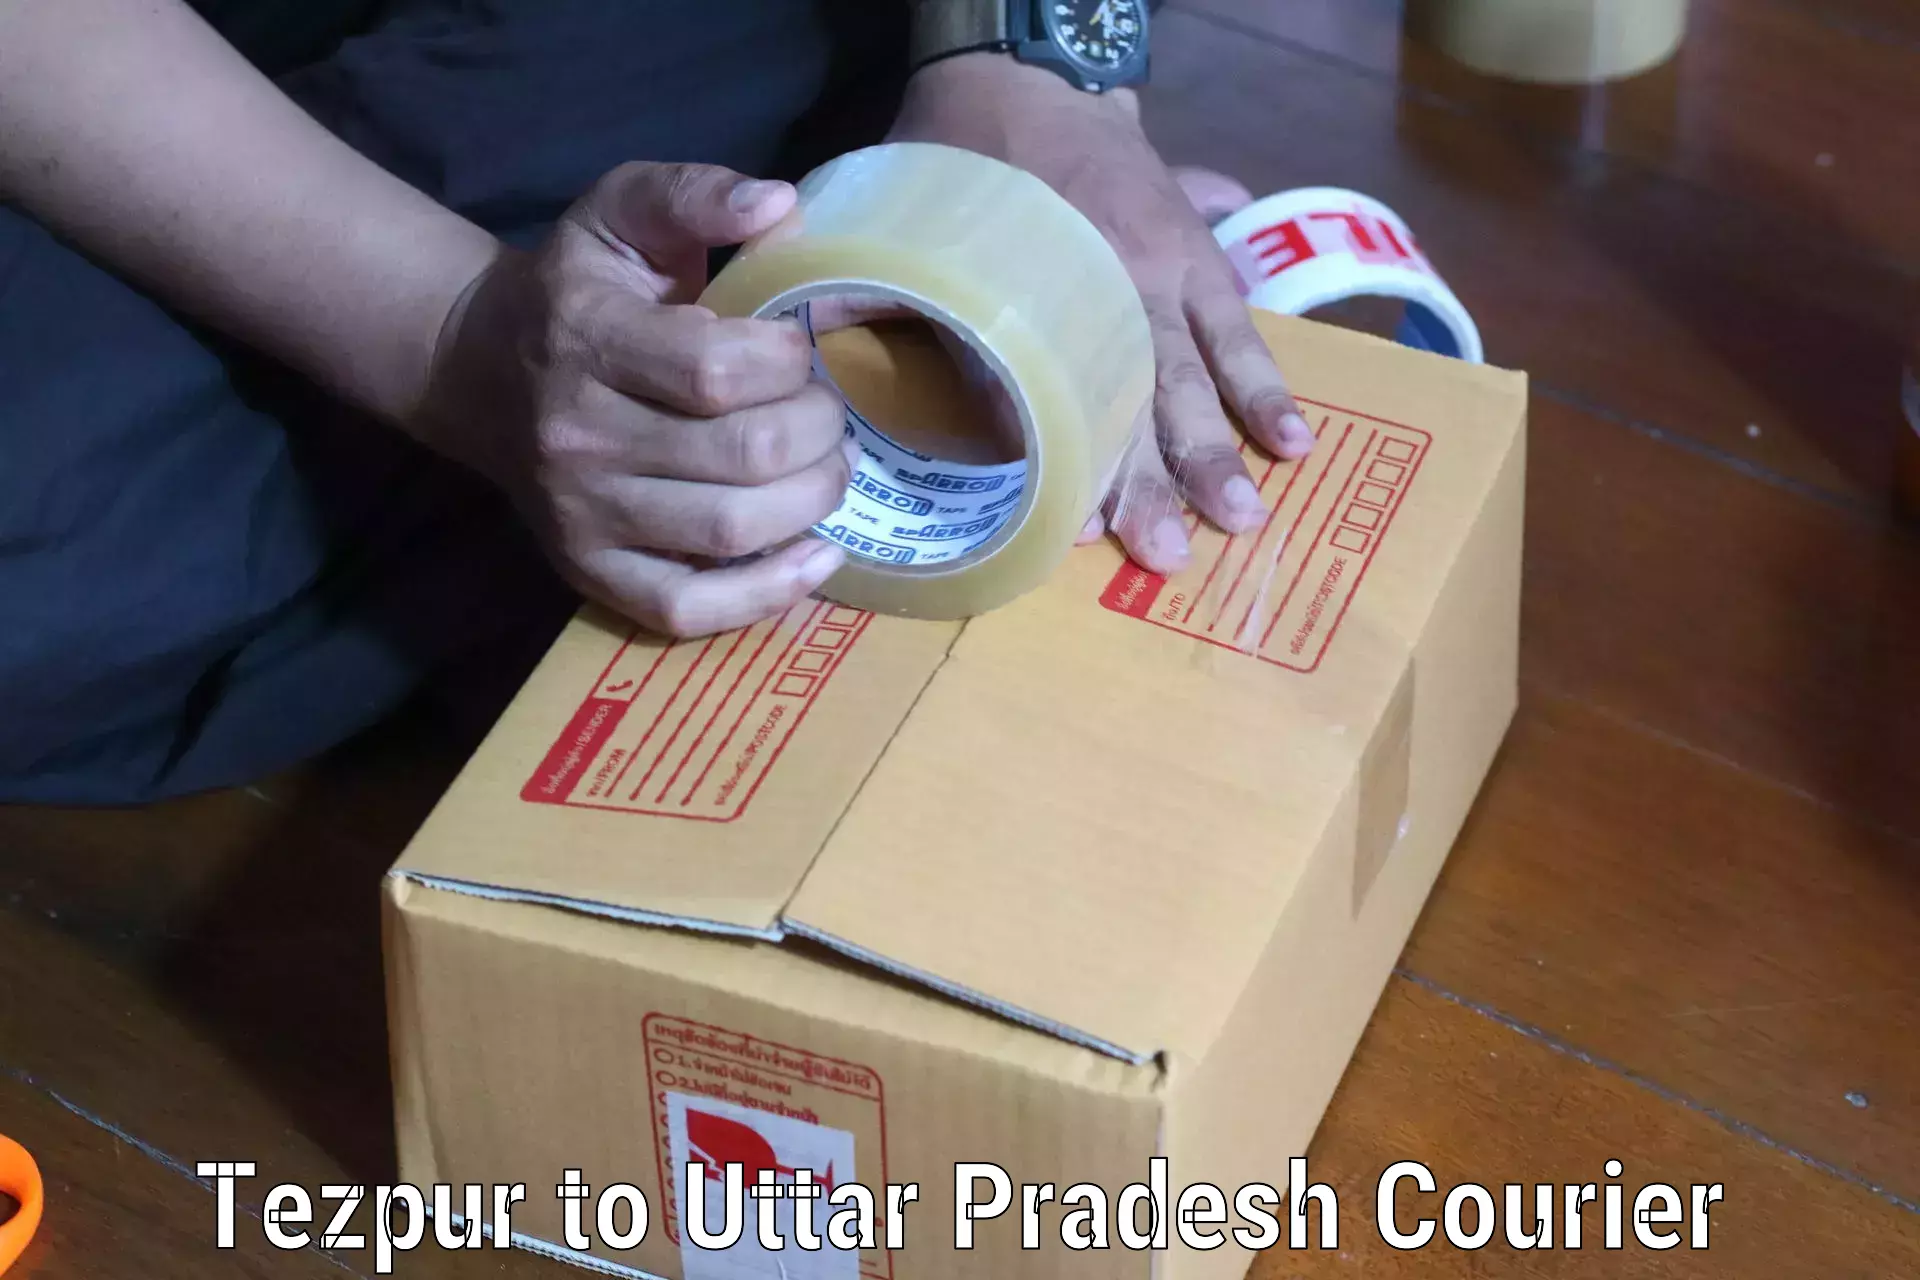 Urban courier service Tezpur to Thakurdwara